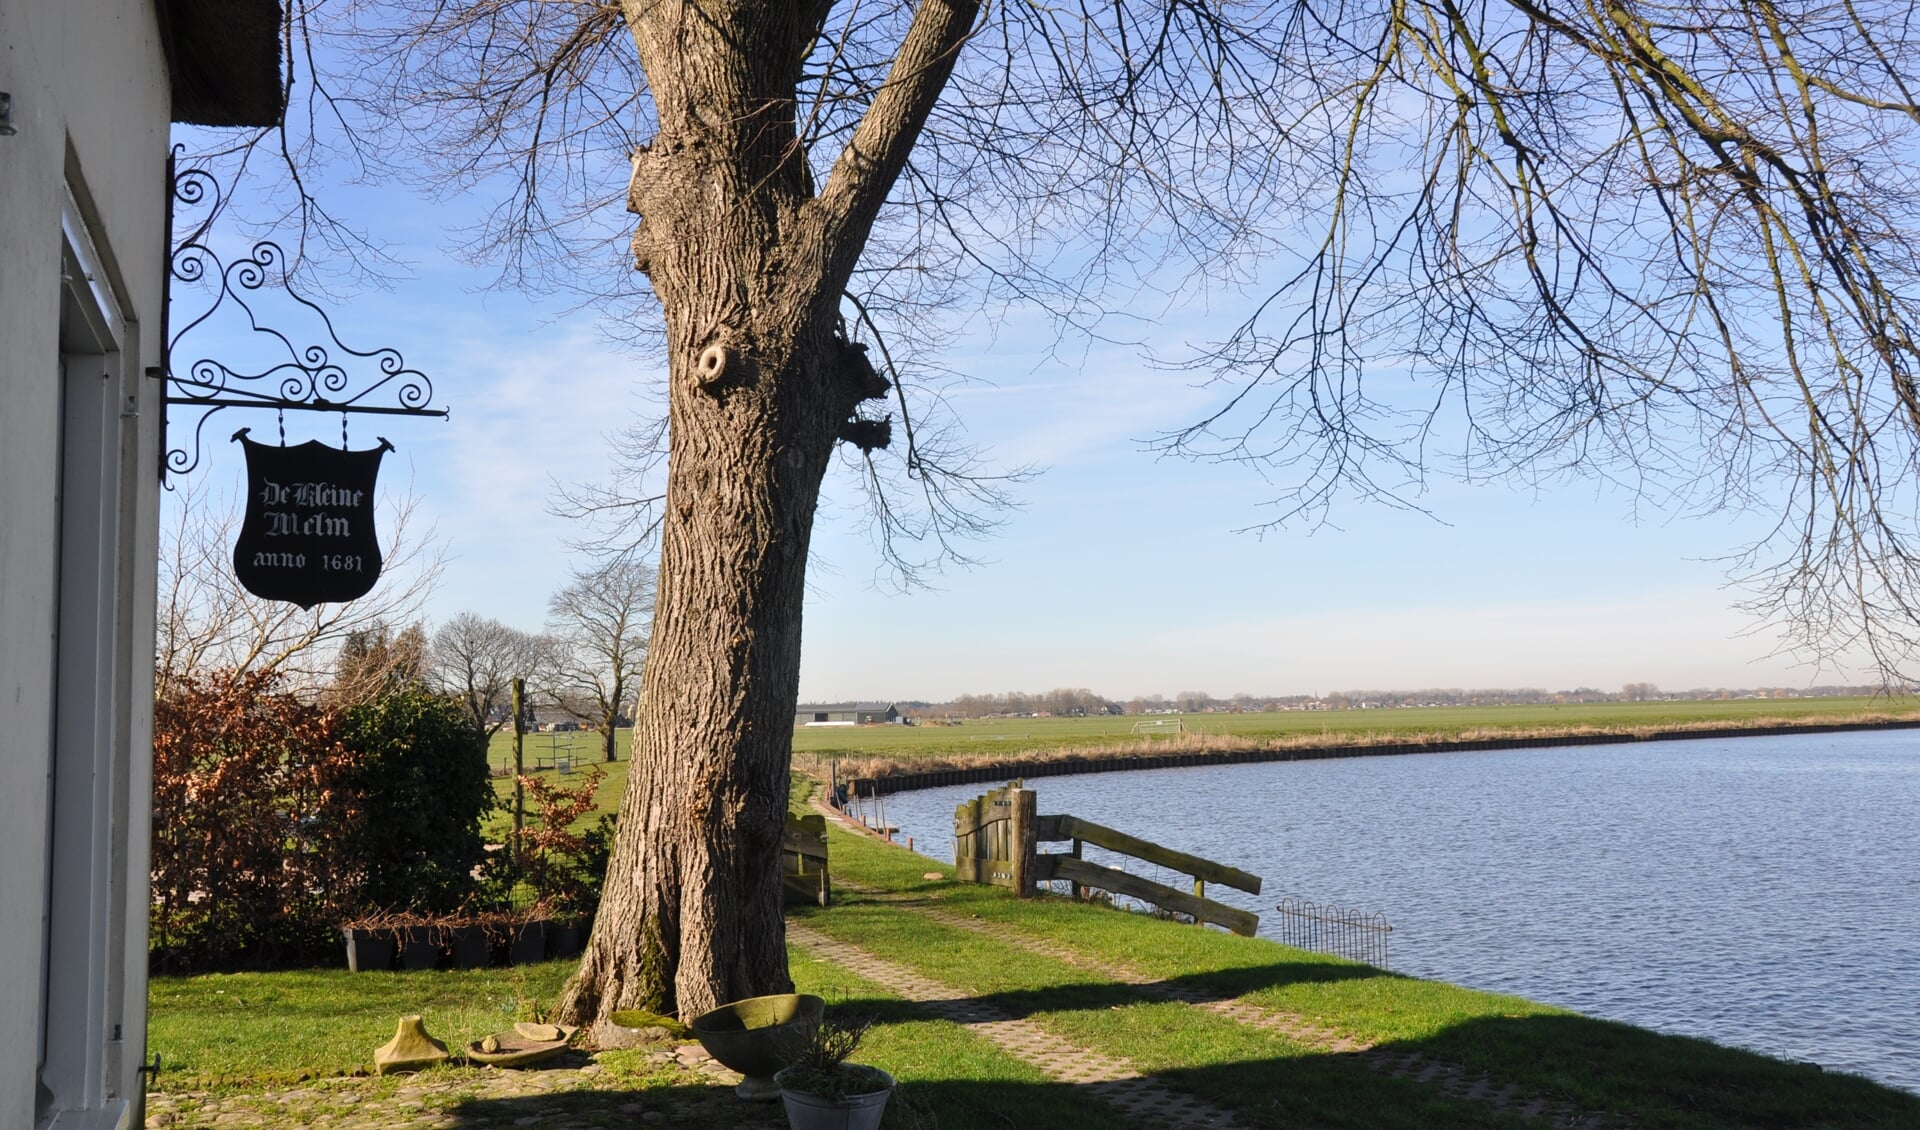 De rivier de Eem bij de Kleine Melm in de Soester polder. De gemeente wil het natuurgebied versterken.